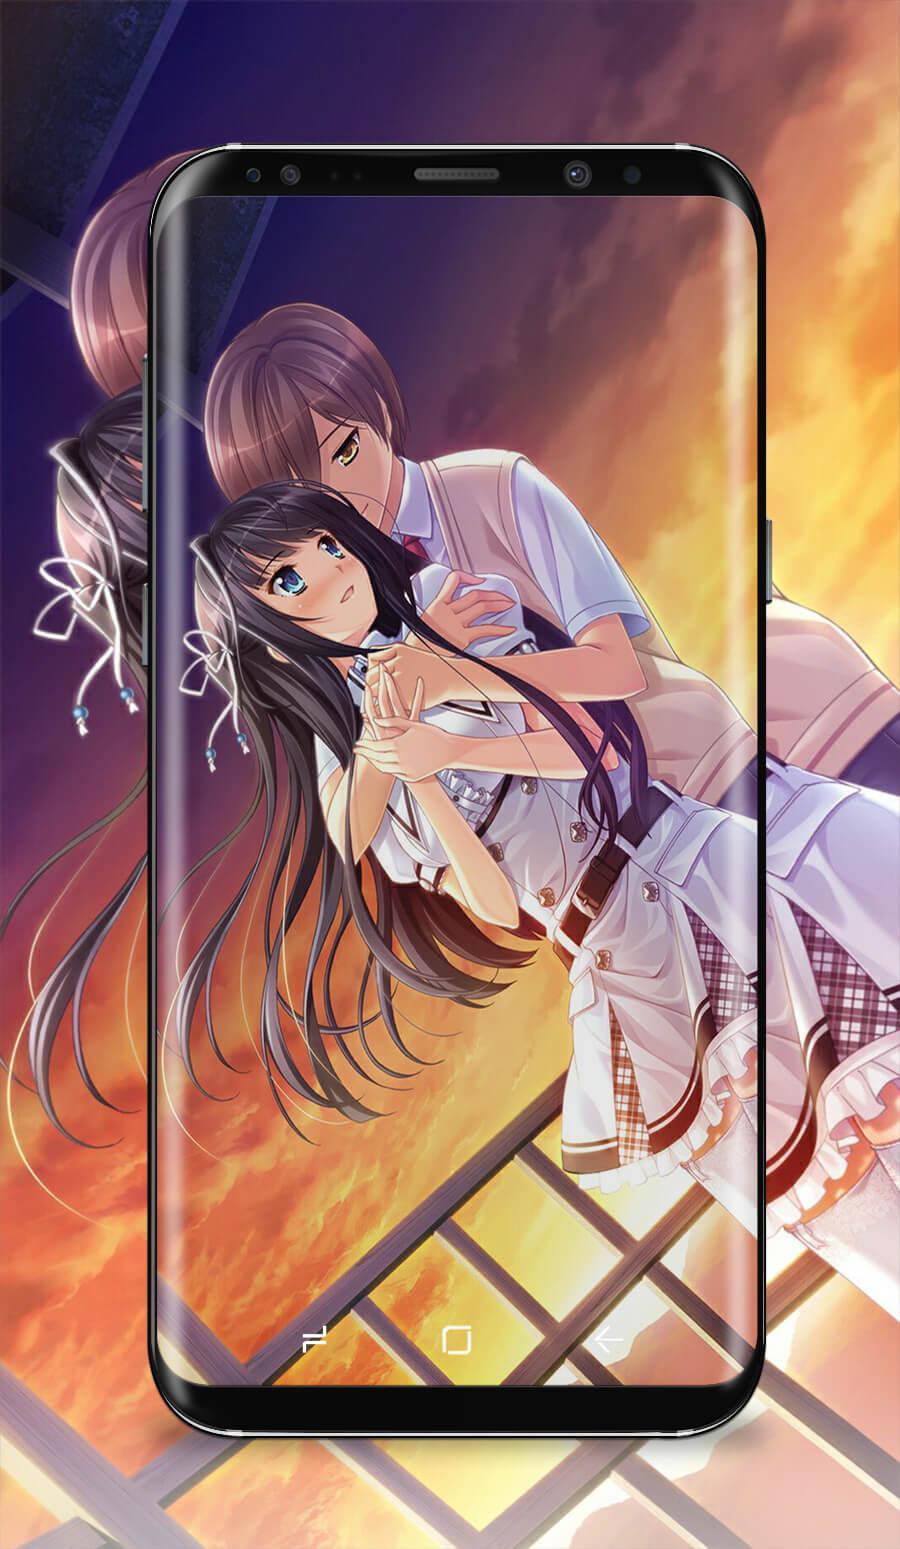 Download Gambar Wallpaper Android Anime Kiss terbaru 2020